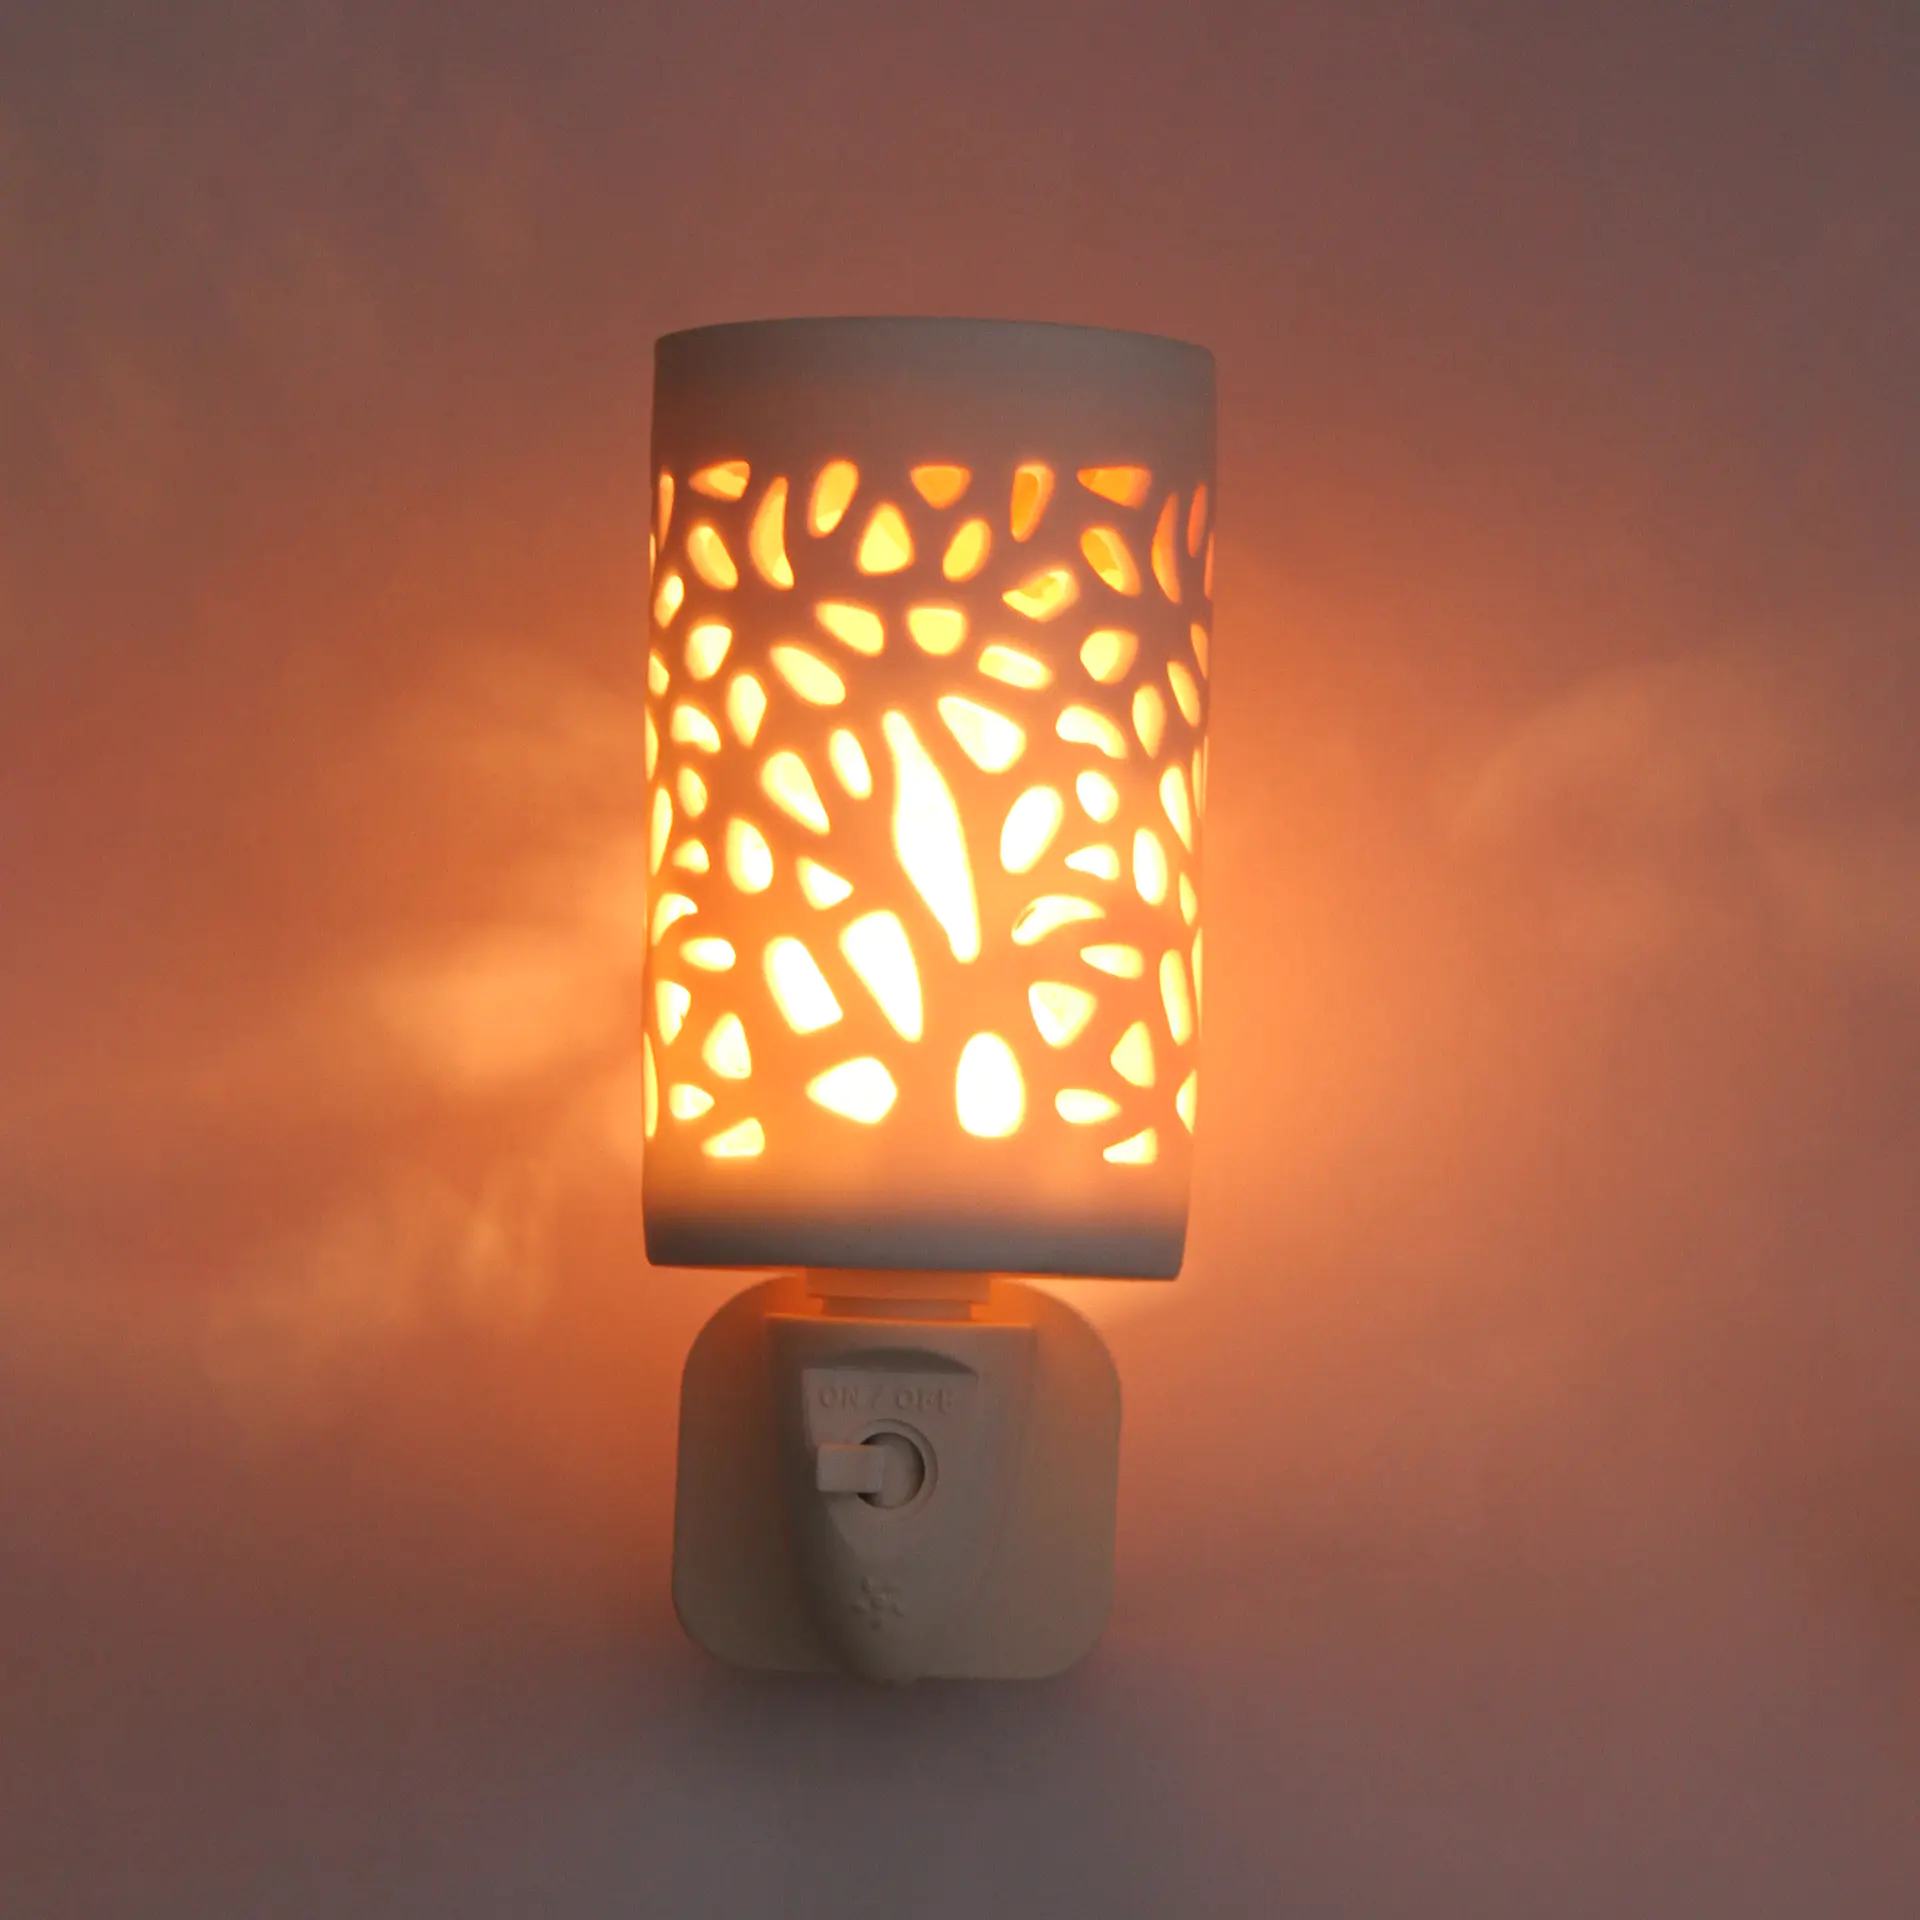 Ceramics hollow Air Purifier night light Himalayan rock Salt Lamp ETL CE SAA CB BS Plug in